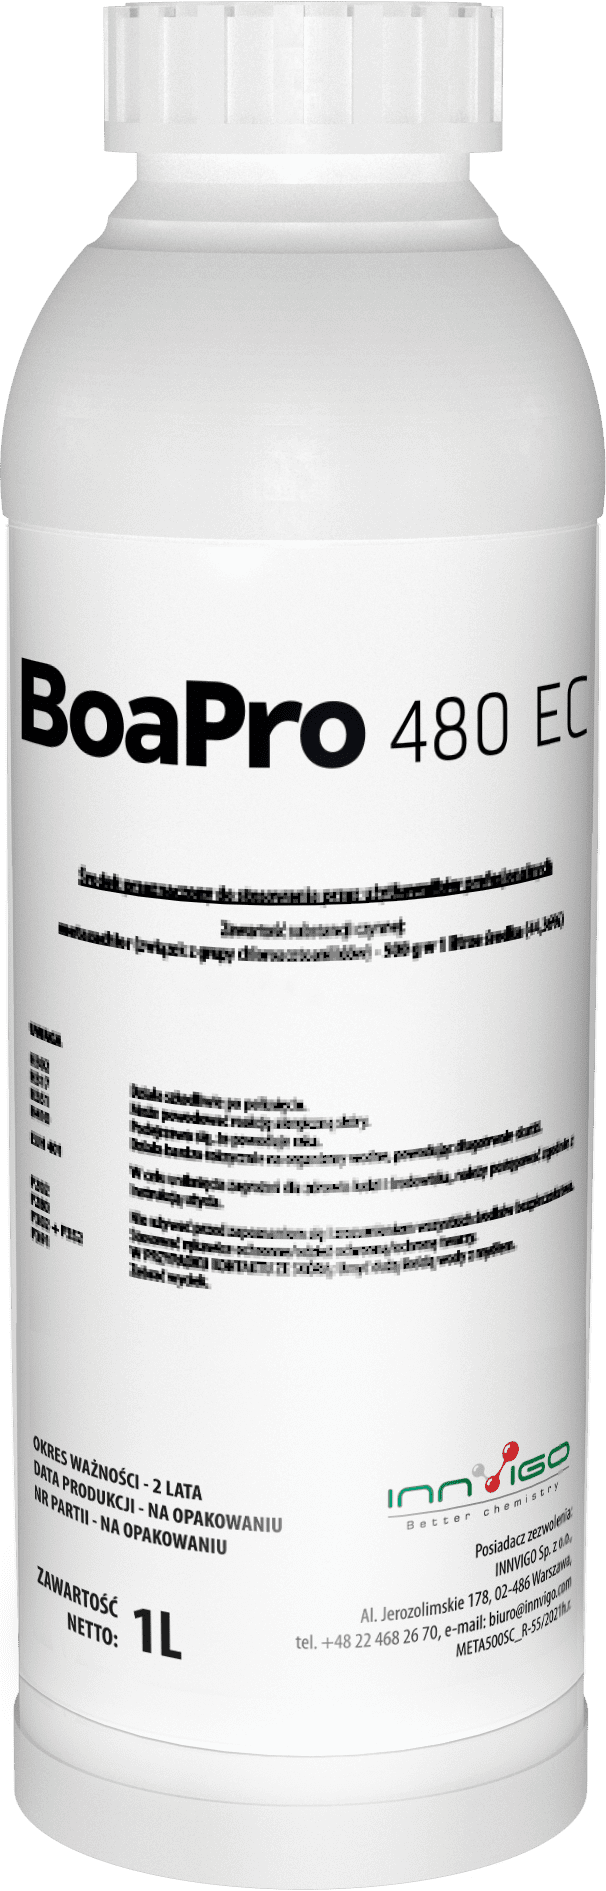 Oprysk na rzepak - herbicyd Boa Pro 480 EC